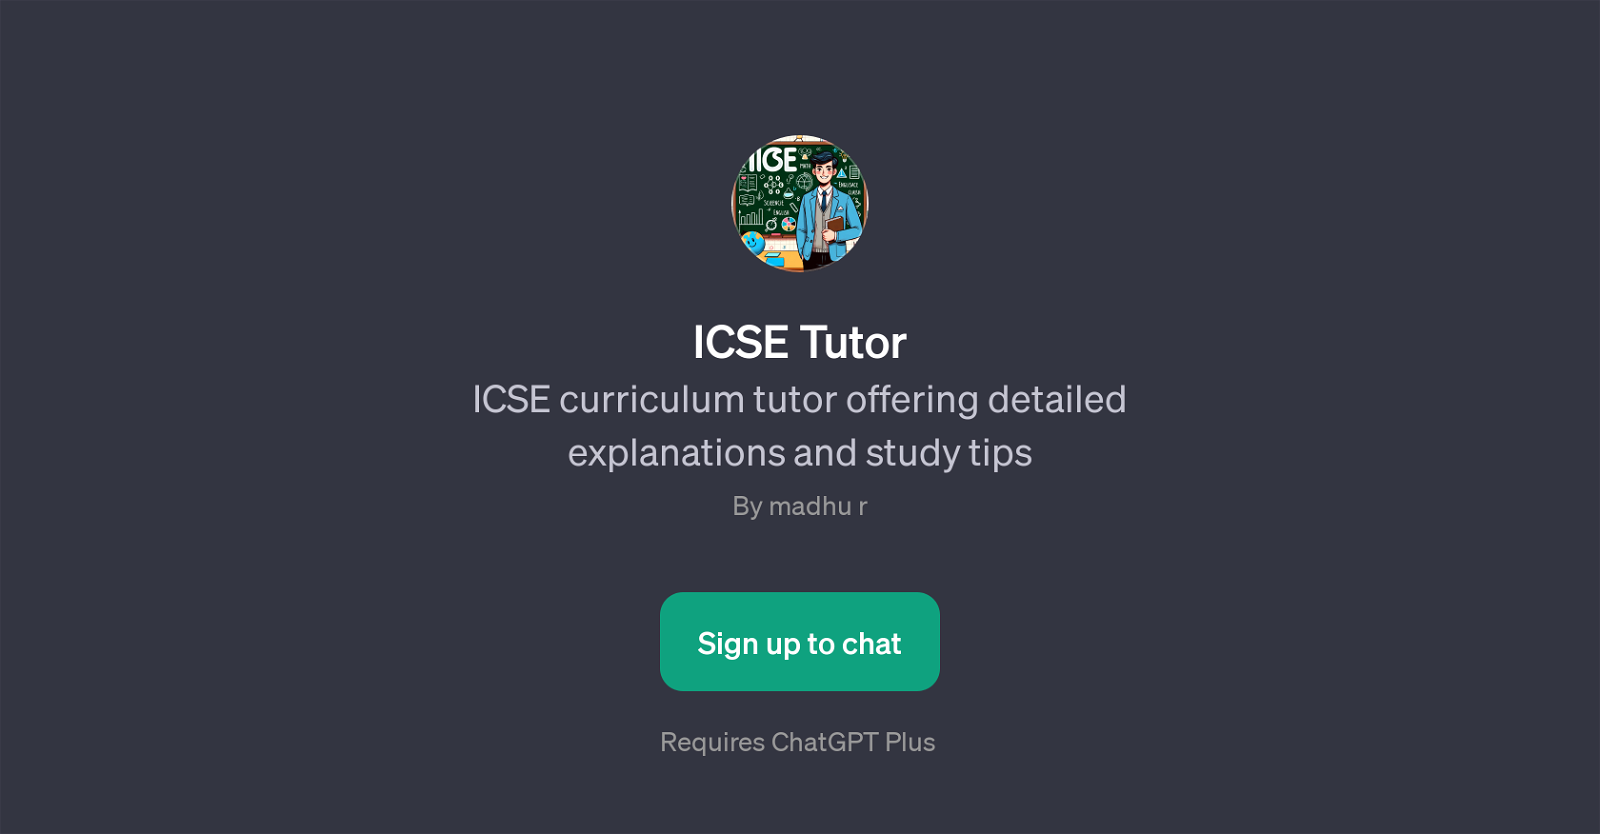 ICSE Tutor website